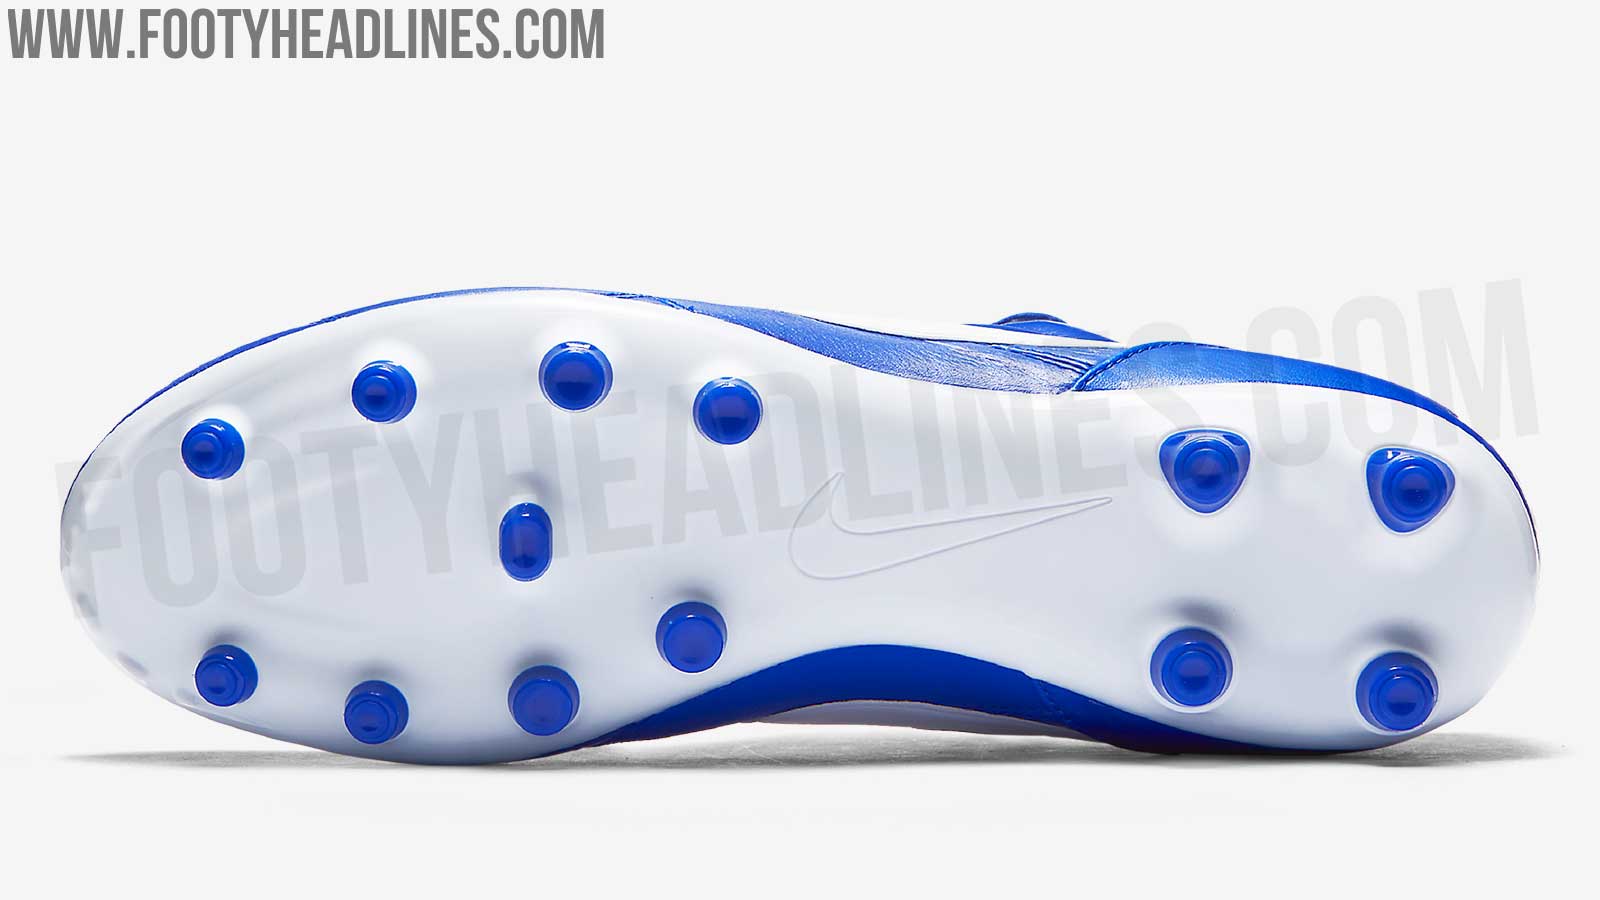 Blue / White Nike Premier II Boots Released - Footy Headlines